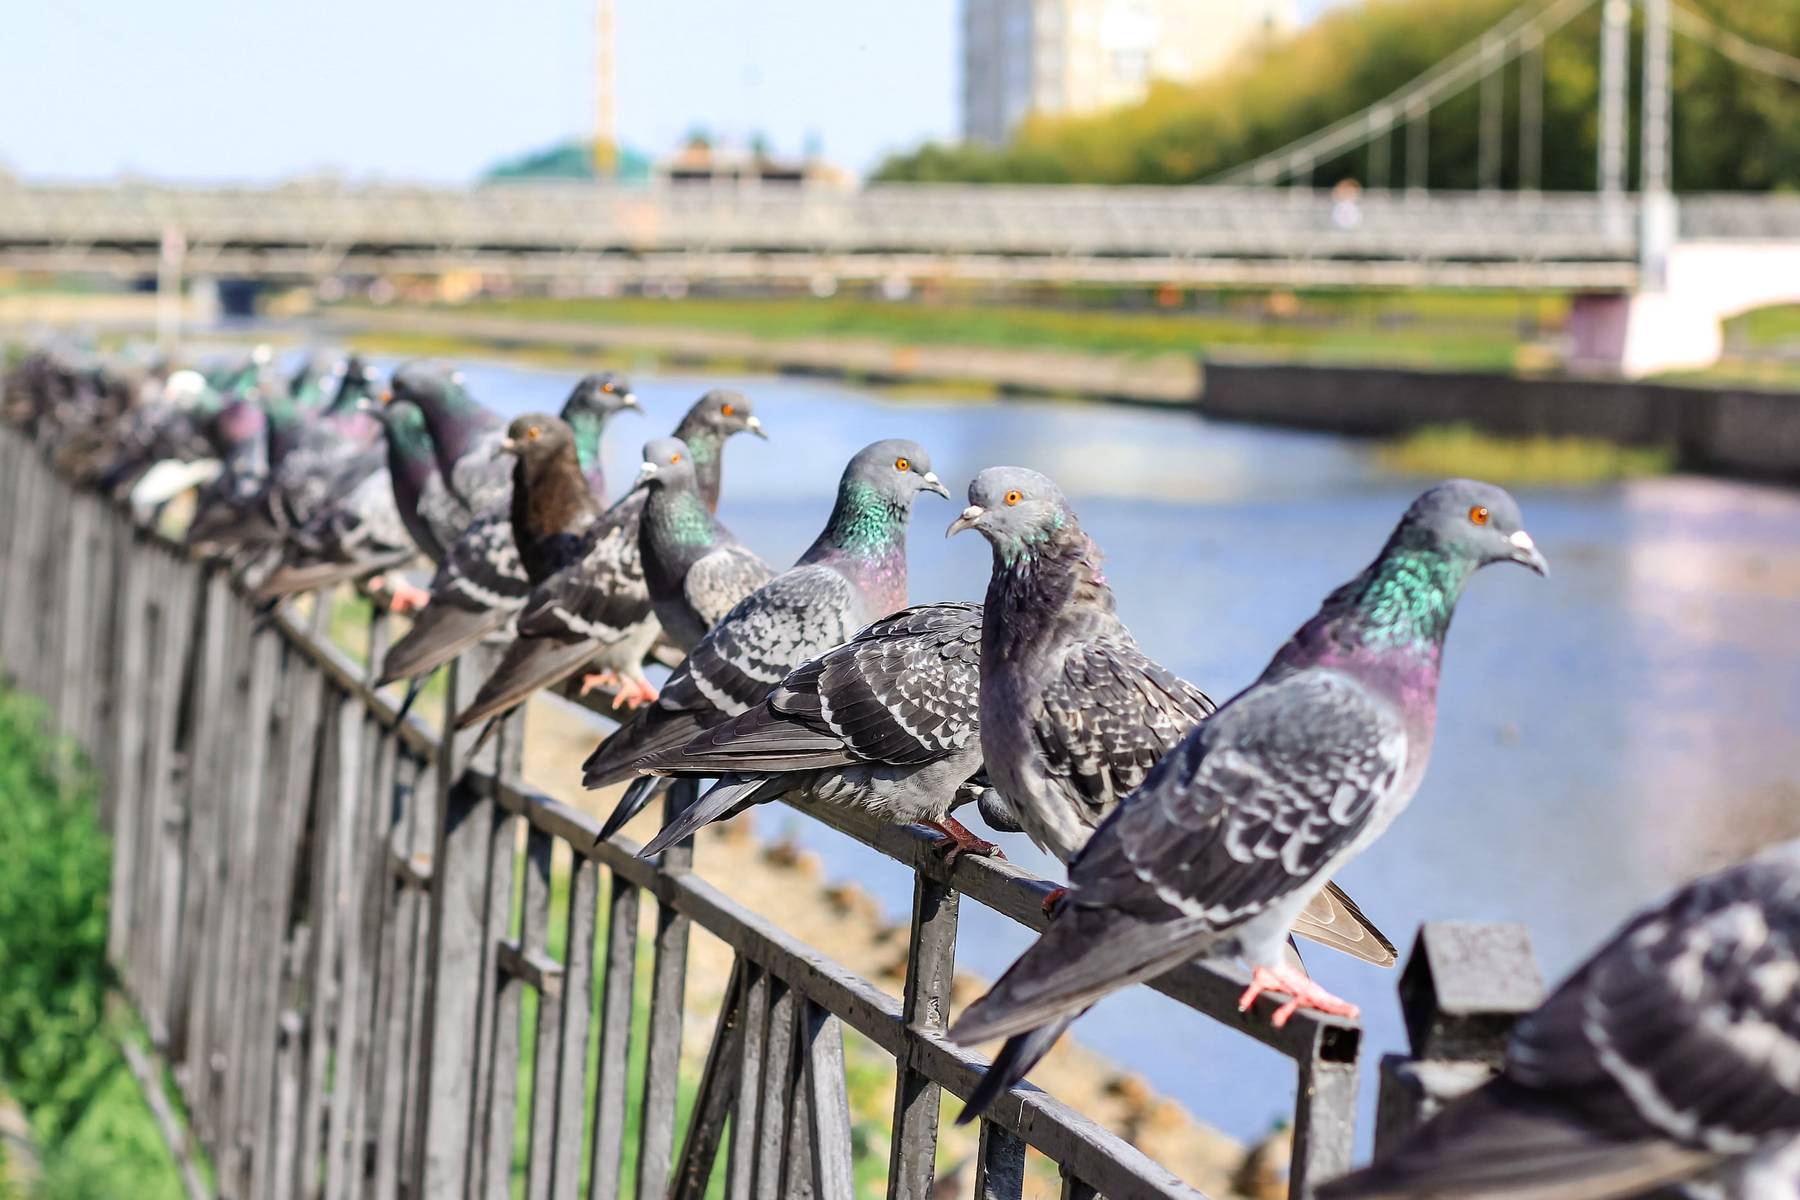 nuisance birds sitting on railing